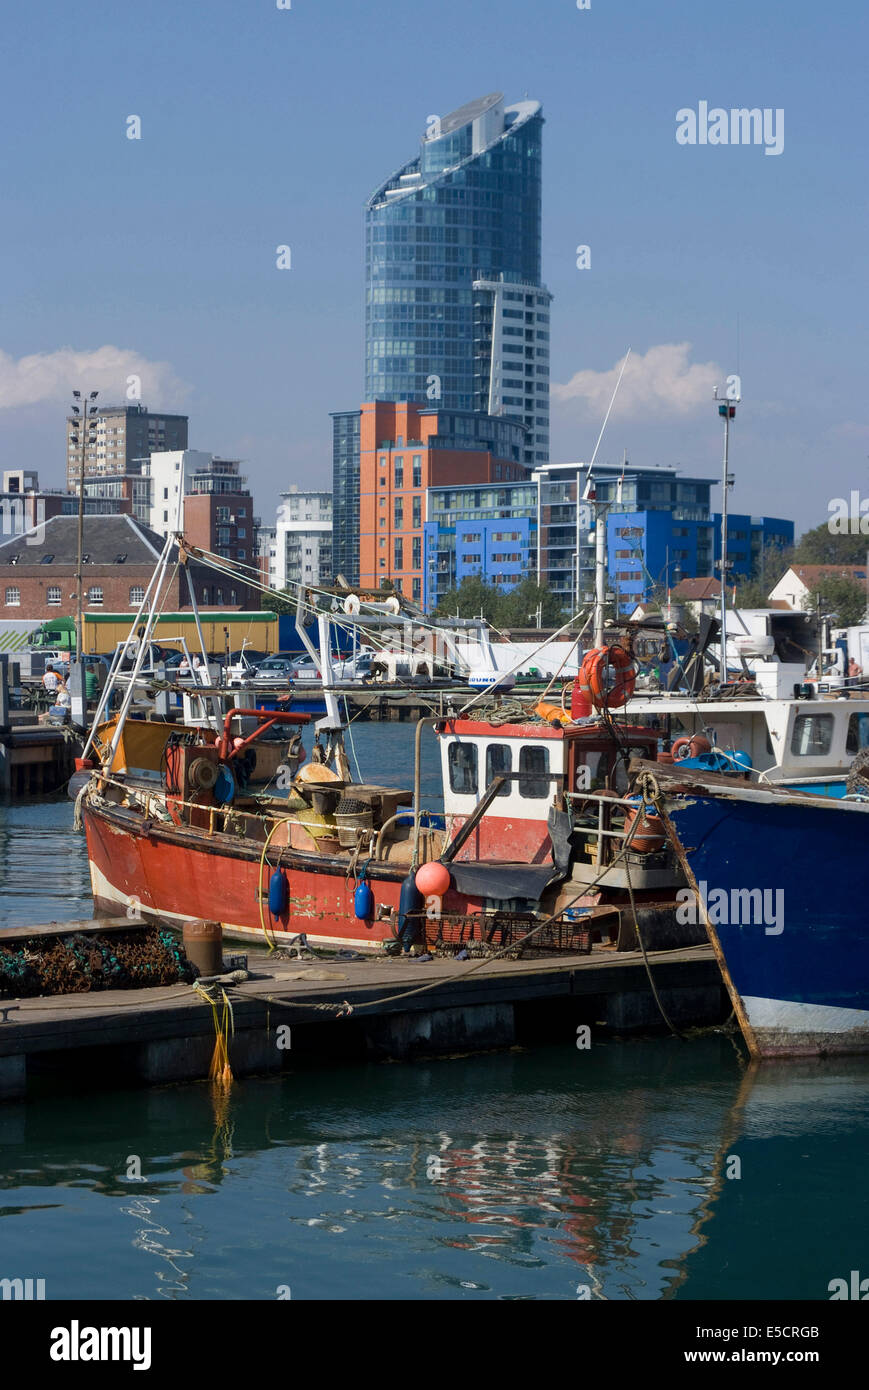 Bateaux de pêche dans le port de plaisance du vieux Portsmouth, avec la ville moderne derrière, Hampshire, Angleterre Banque D'Images